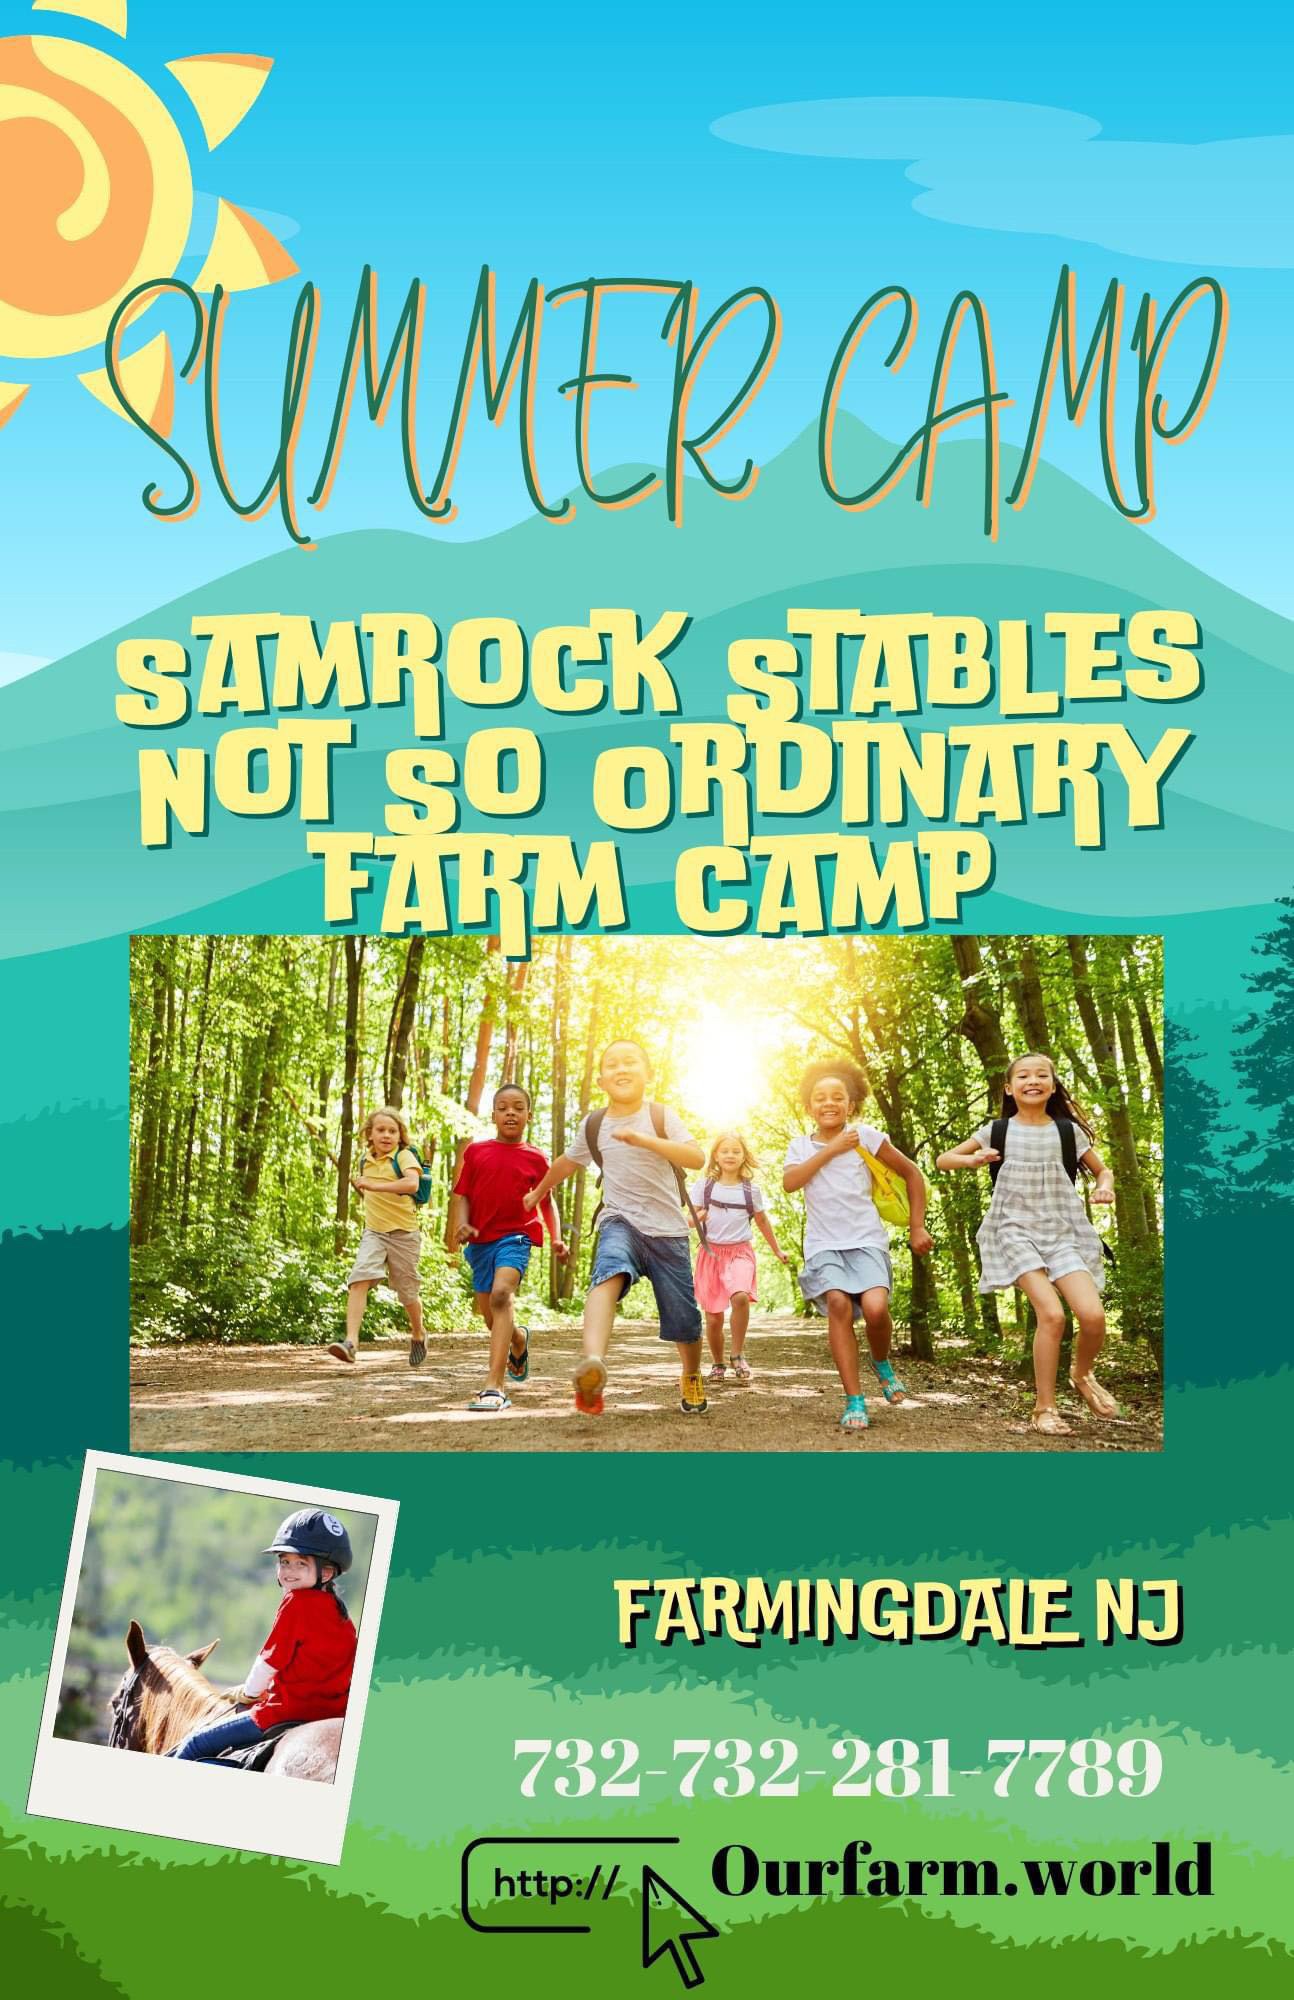 Samrock Stables Summer Camp Farmingdale New Jersey